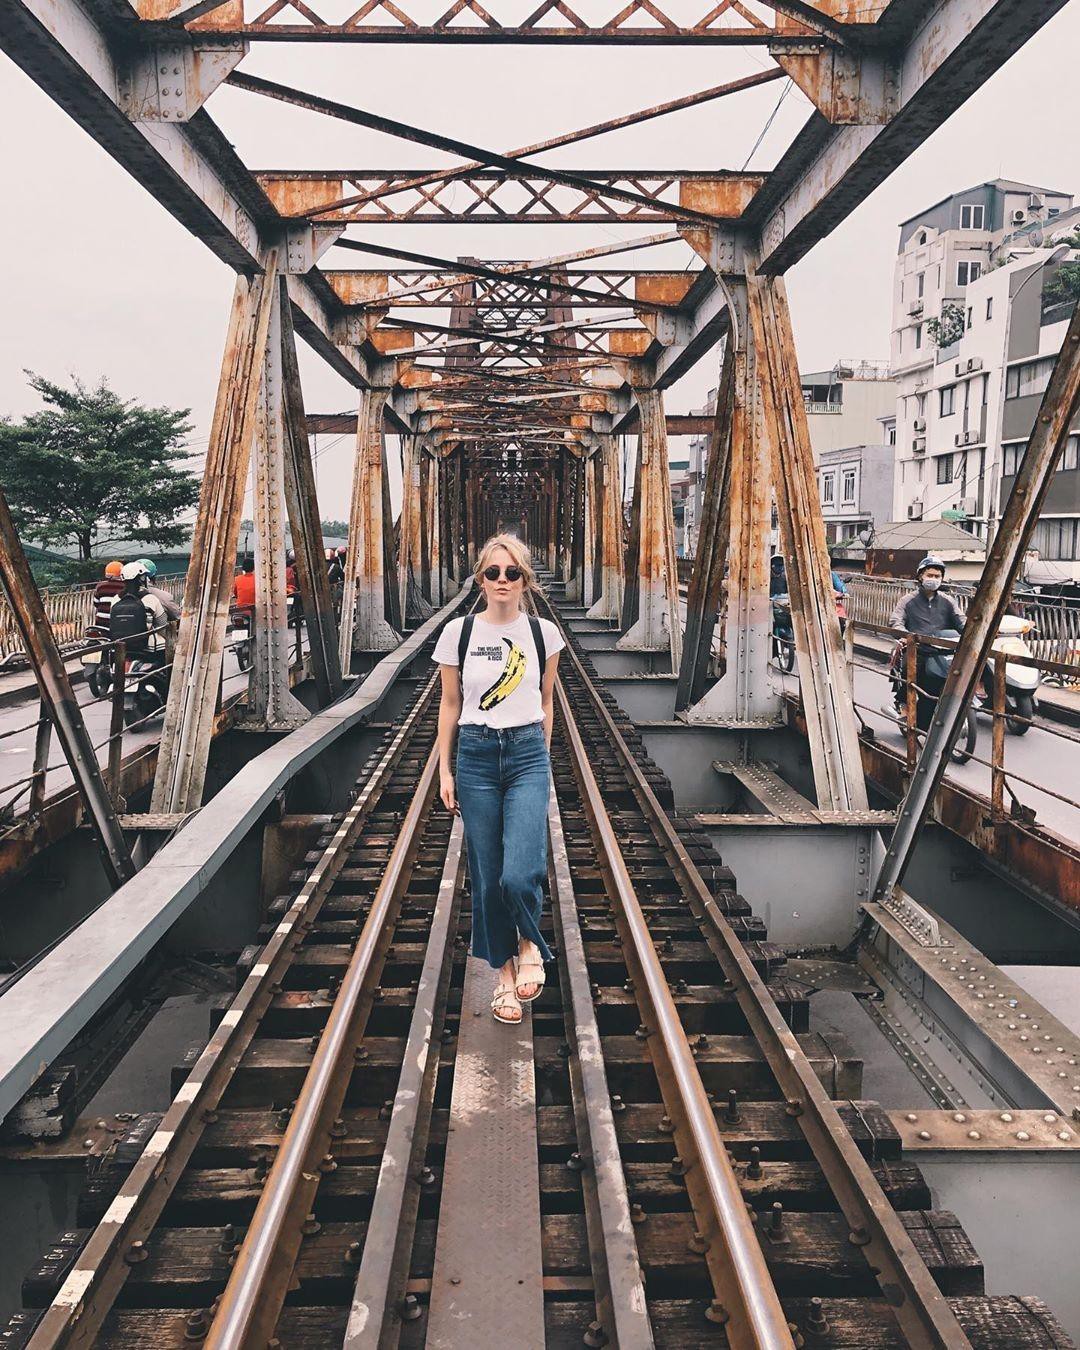 Bất chấp nguy hiểm, khách du lịch đổ xô đến cầu Long Biên chụp ảnh 'check-in' Ảnh 7